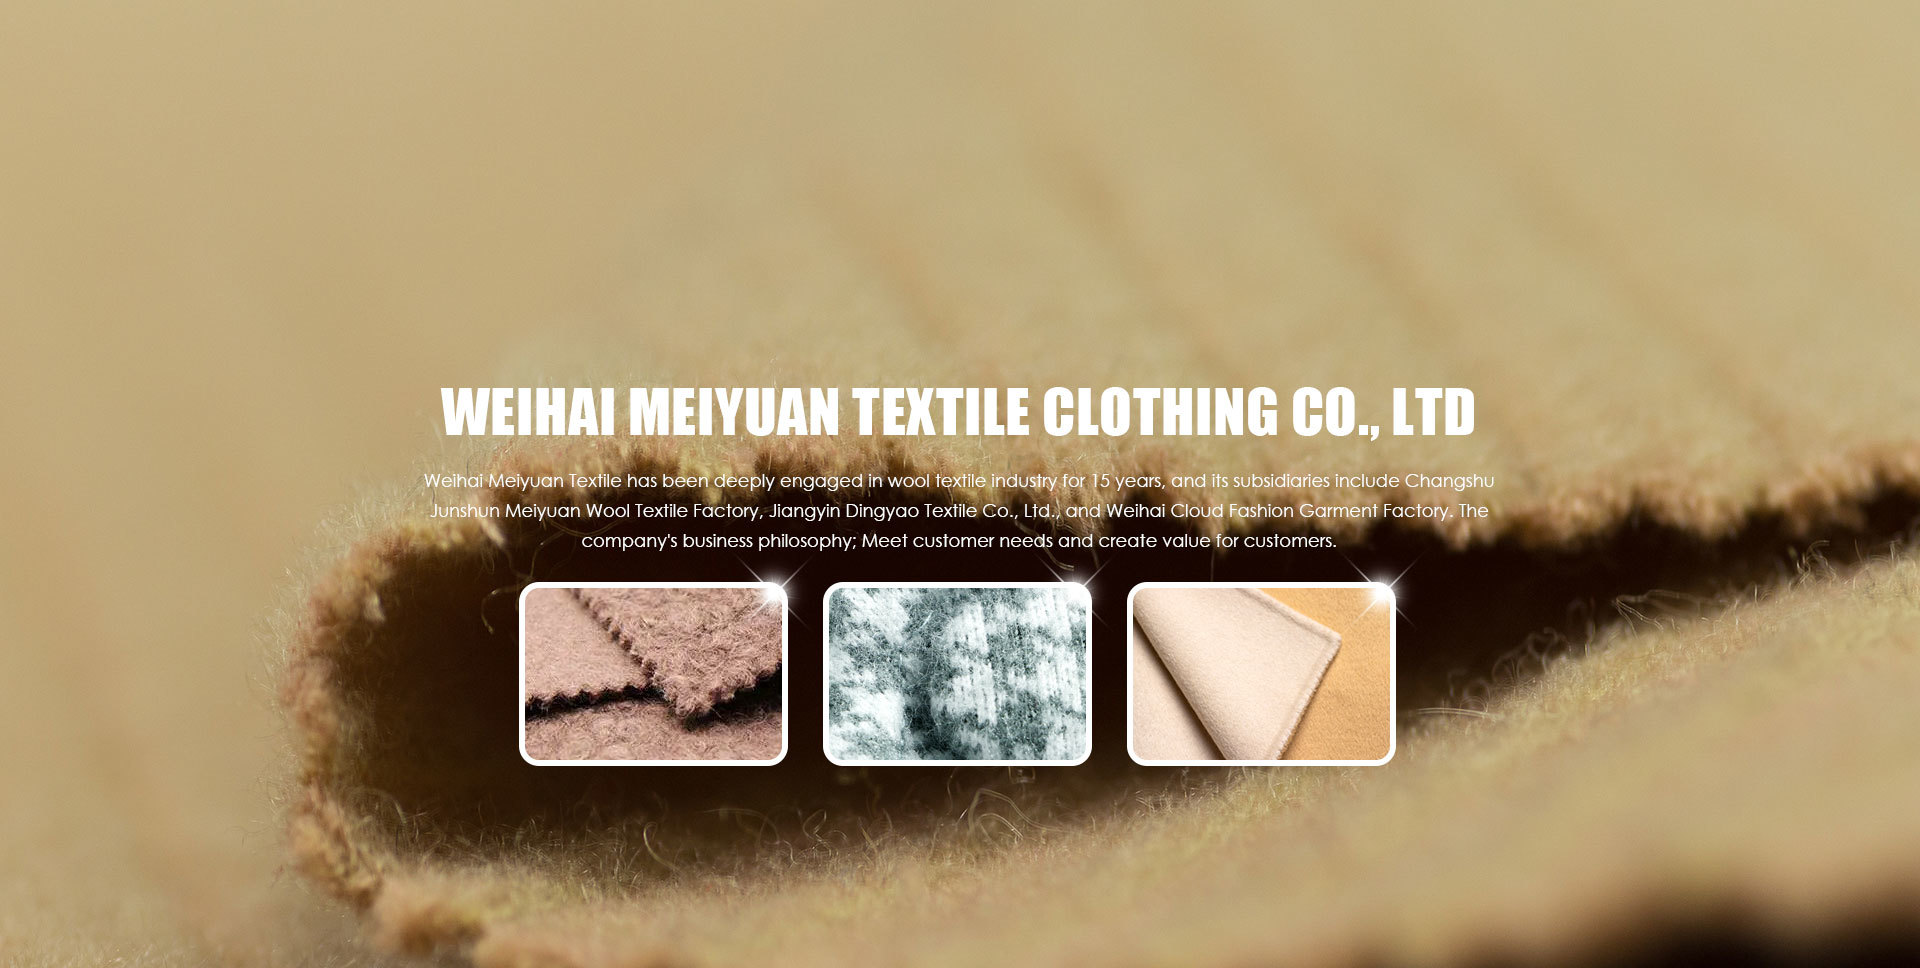 Weihai Meiyuan Textile Clothing Co., Ltd